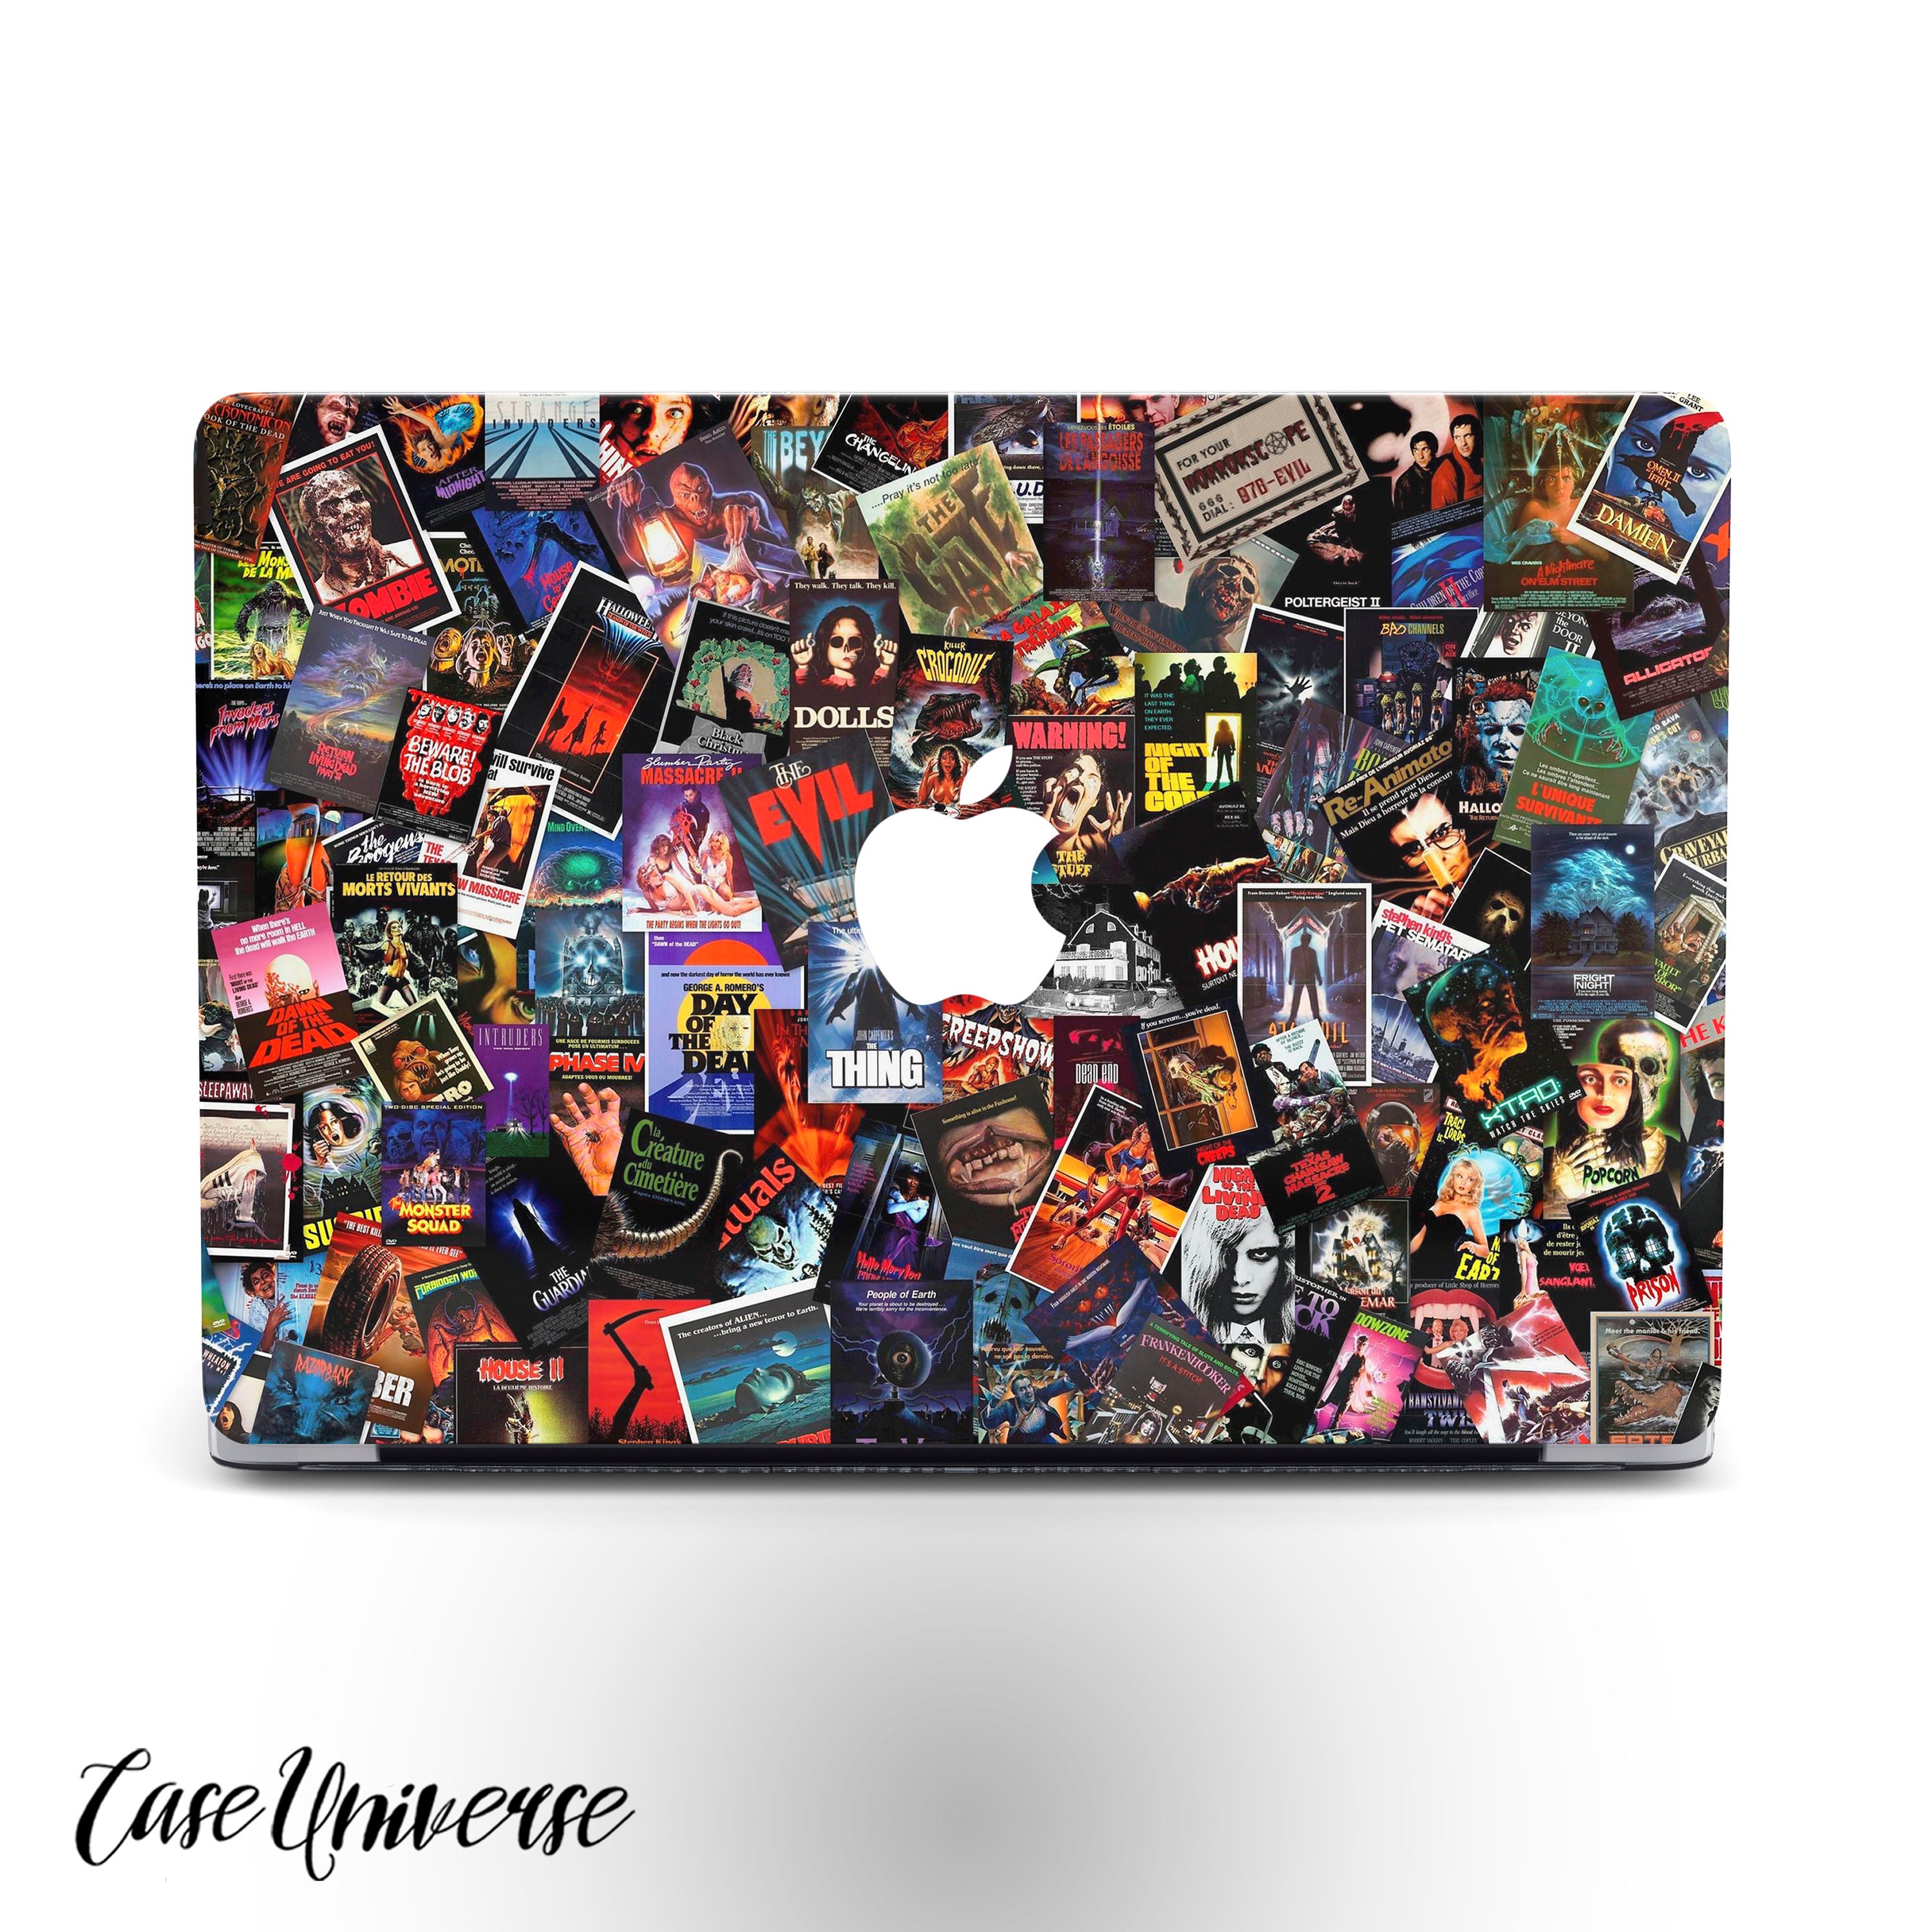 Lunso - Housse - MacBook Pro 13 pouces (2020) - Marble Ariel